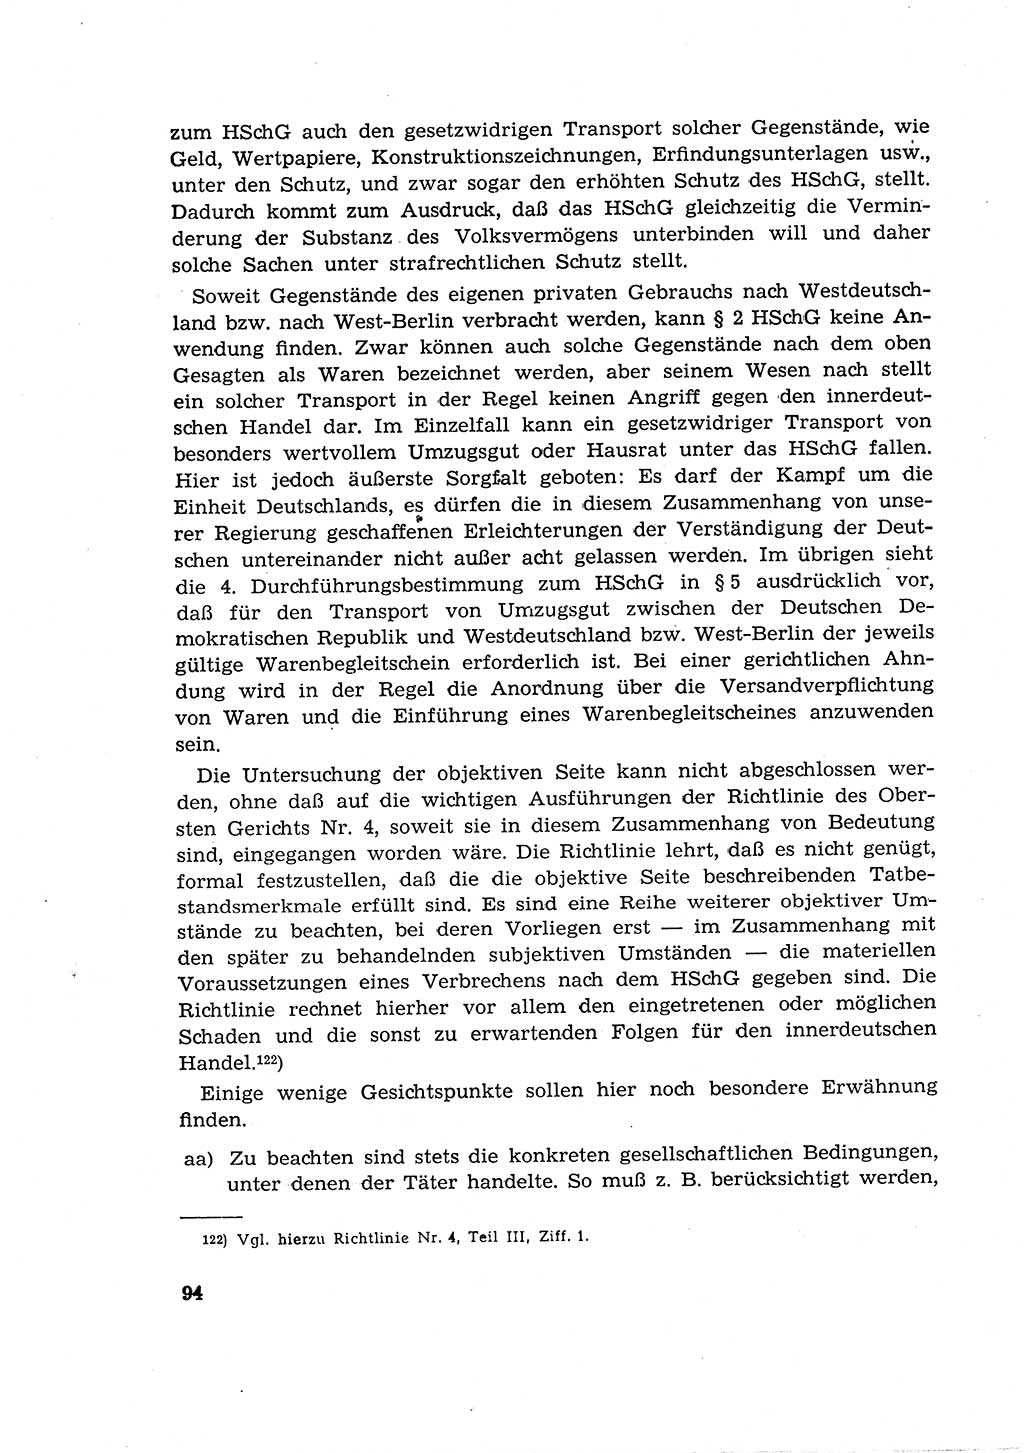 Materialien zum Strafrecht, Besonderer Teil [Deutsche Demokratische Republik (DDR)] 1955, Seite 94 (Mat. Strafr. BT DDR 1955, S. 94)